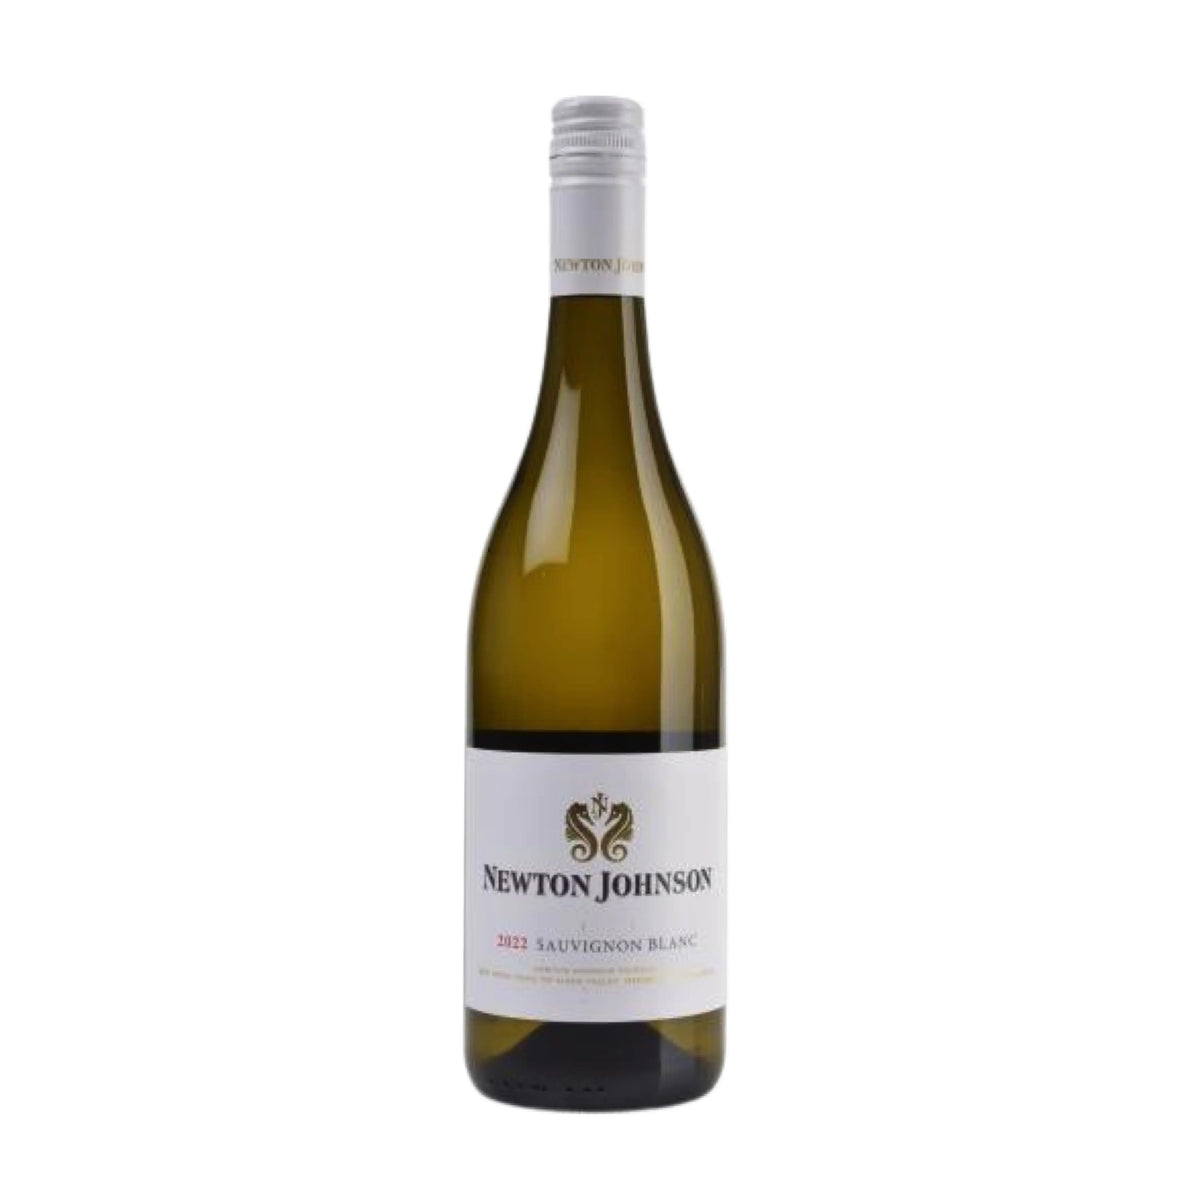 Newton Johnson-Weißwein-Sauvignon Blanc-2022 Sauvignon Blanc Hermel en Aarde Valley-WINECOM